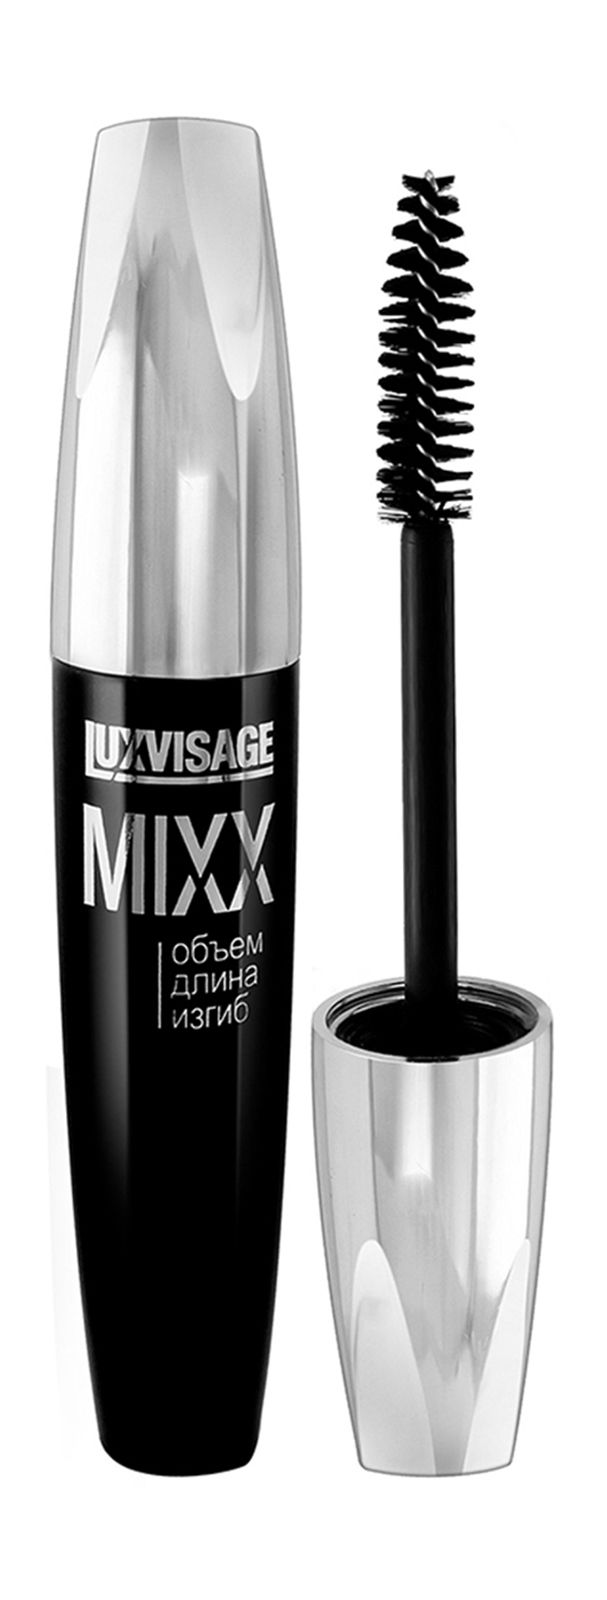 Luxvisage killer. LUXVISAGE Mixx тушь. Lux visage тушь Mixx 12г черная. Тушь для ресниц Mixx объём, длина, изгиб 12г LUXVISAGE/6/М. LUXVISAGE тушь для ресниц Mixx объём длина изгиб 12 г.